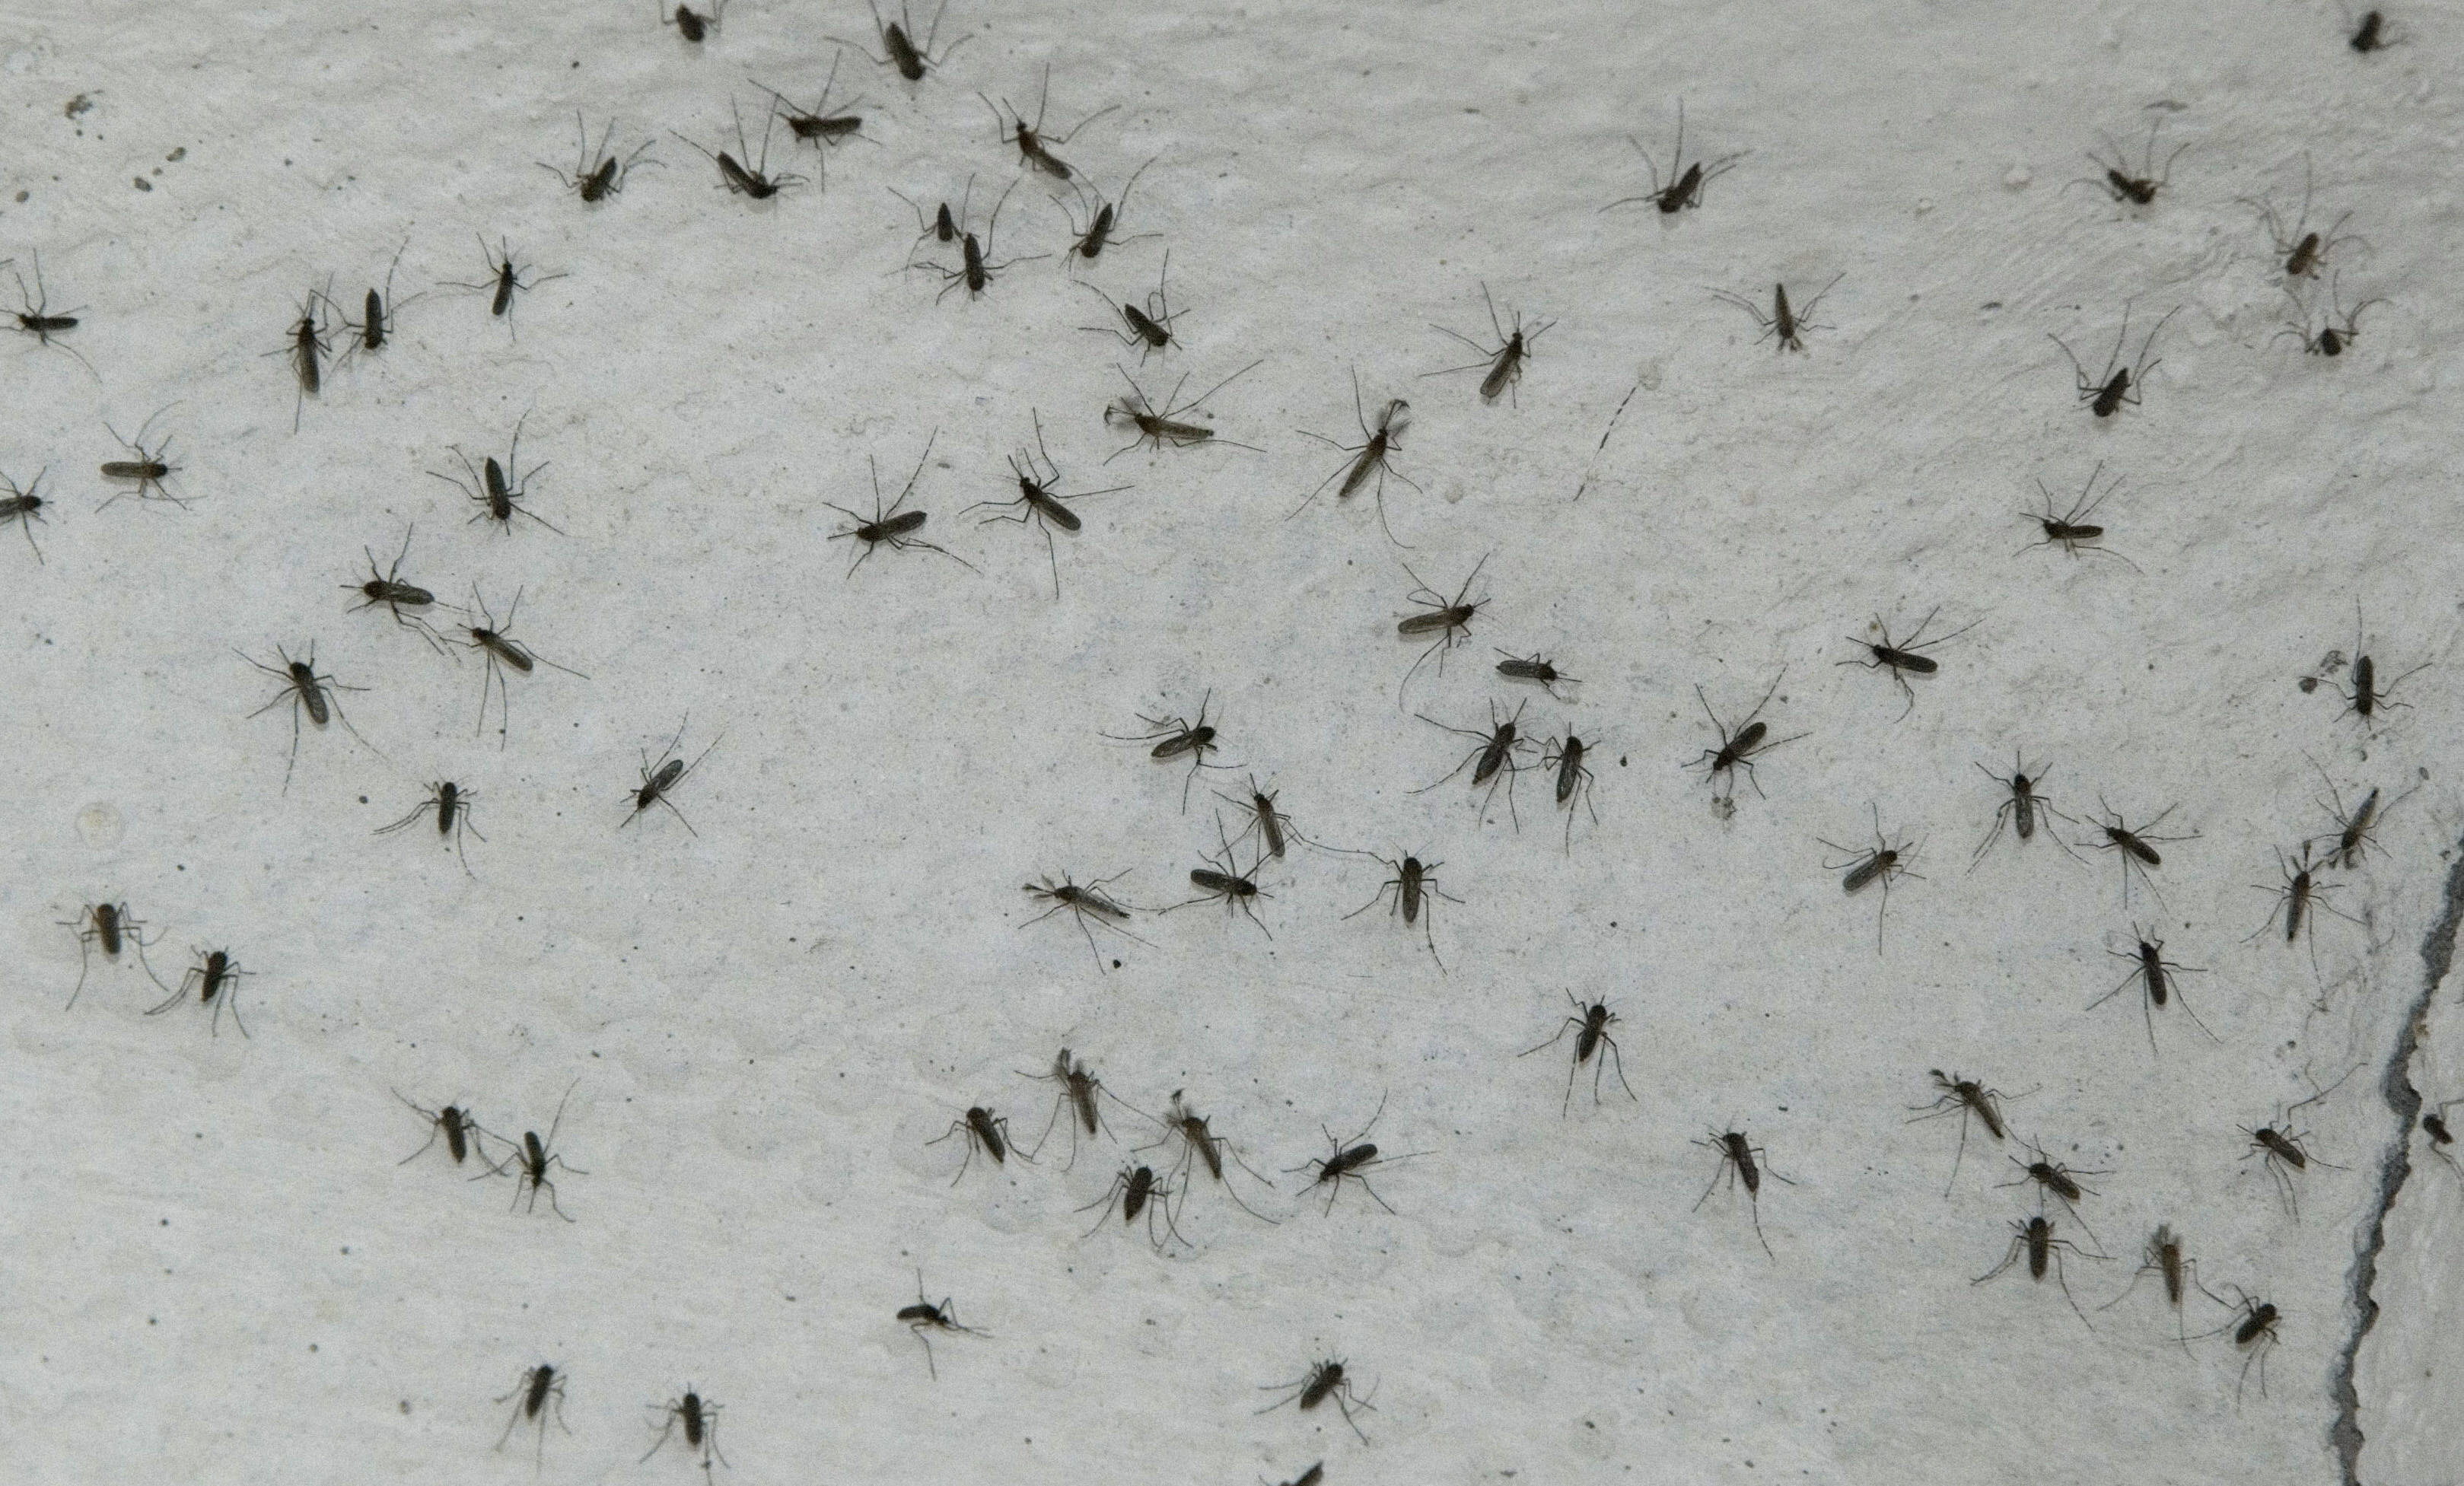 "Hace años, la idea de liberar mosquitos como un aliado en la lucha contra las enfermedades les pareció una locura a muchas personas. Estos asombrosos mosquitos están tomando vuelo y salvando vidas”, escribió Gates / EFE /Jaime Ávalos